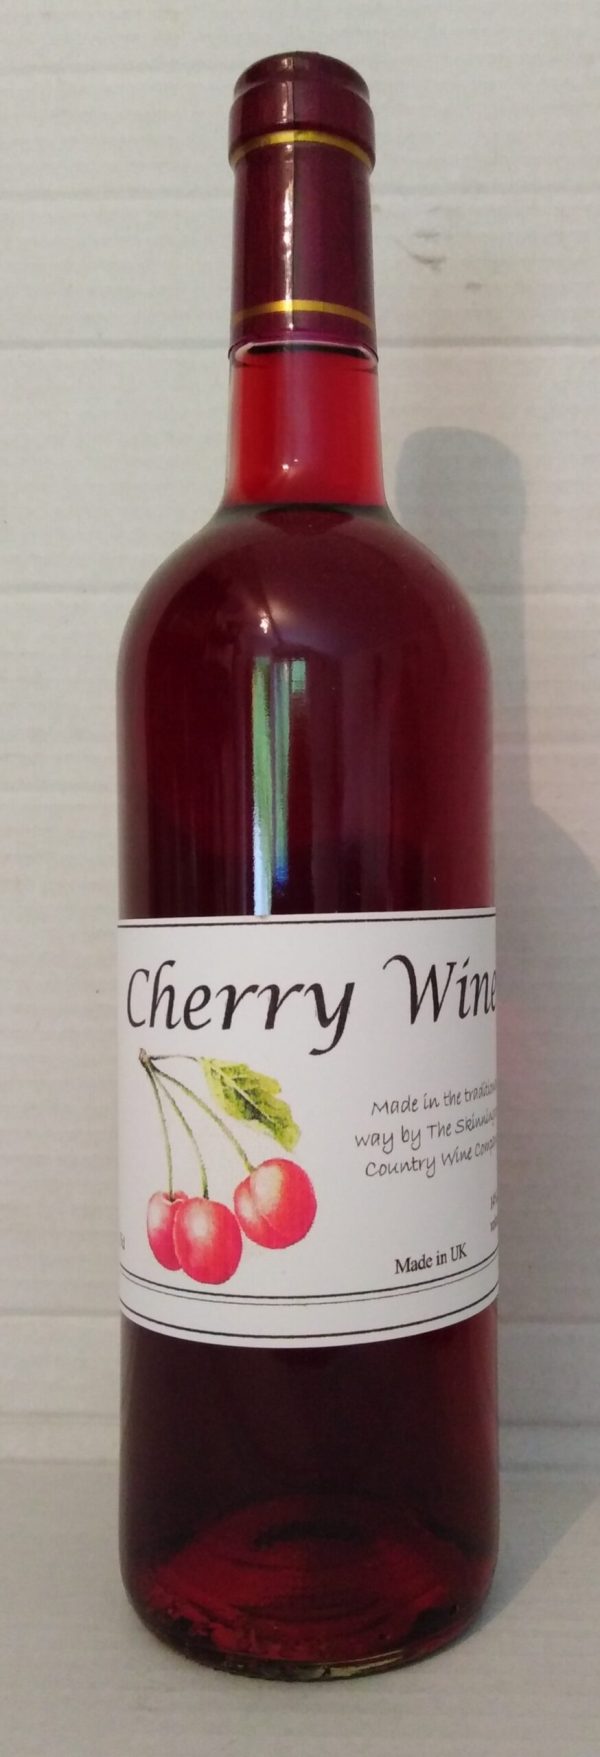 Cherry Wine from Skinningrove Country wines